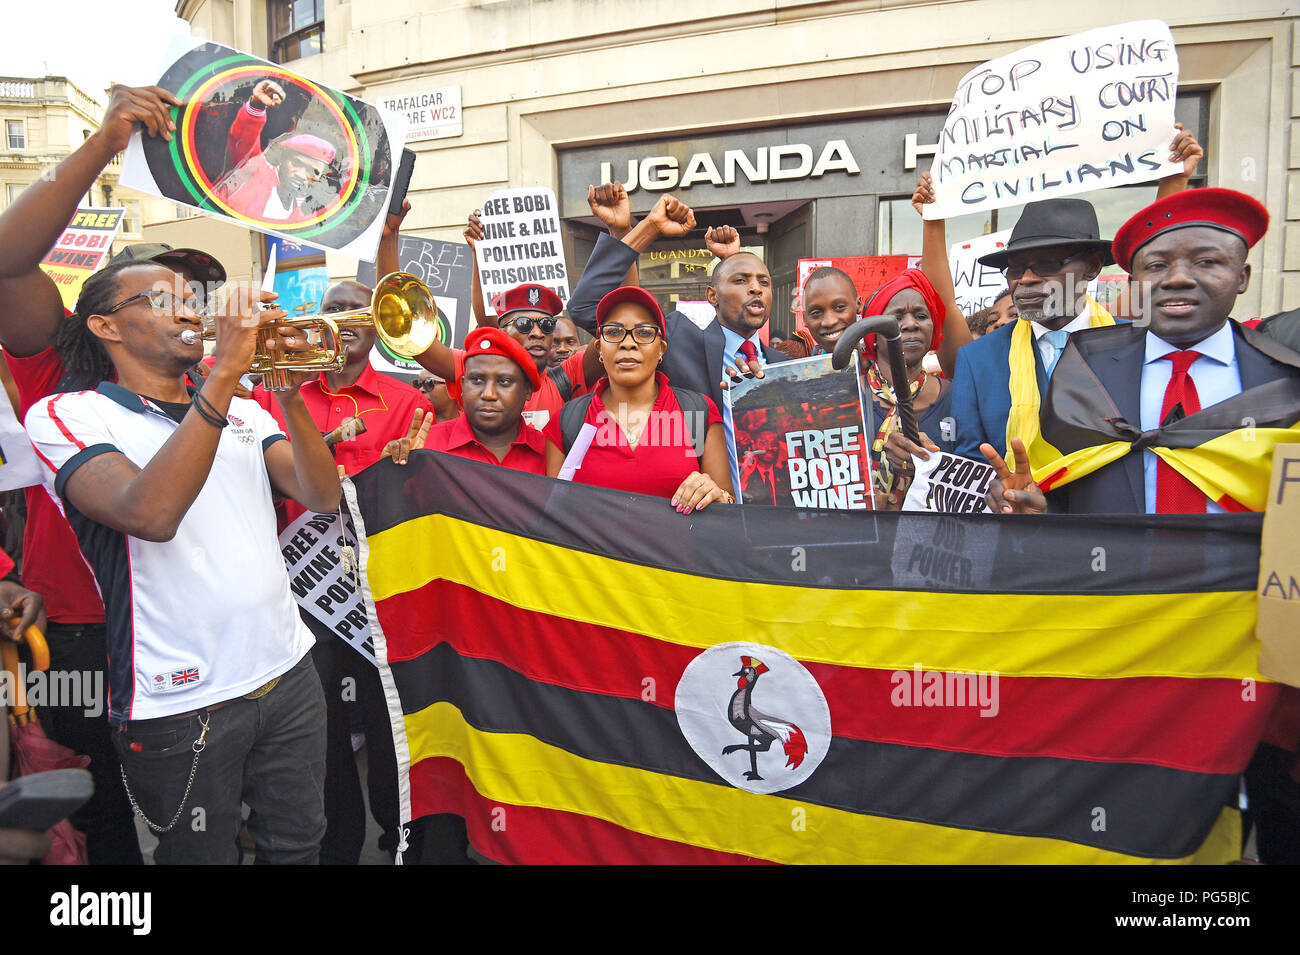 Die ugander Protest außerhalb Uganda Haus in Trafalgar Square, London, nach ugandischen Pop Star - gedreht - Politiker Bobi Wein wurde des Hochverrats in einem zivilen Gericht erhoben, Minuten nach einem Militaergericht fallengelassen Waffen lädt. Stockfoto